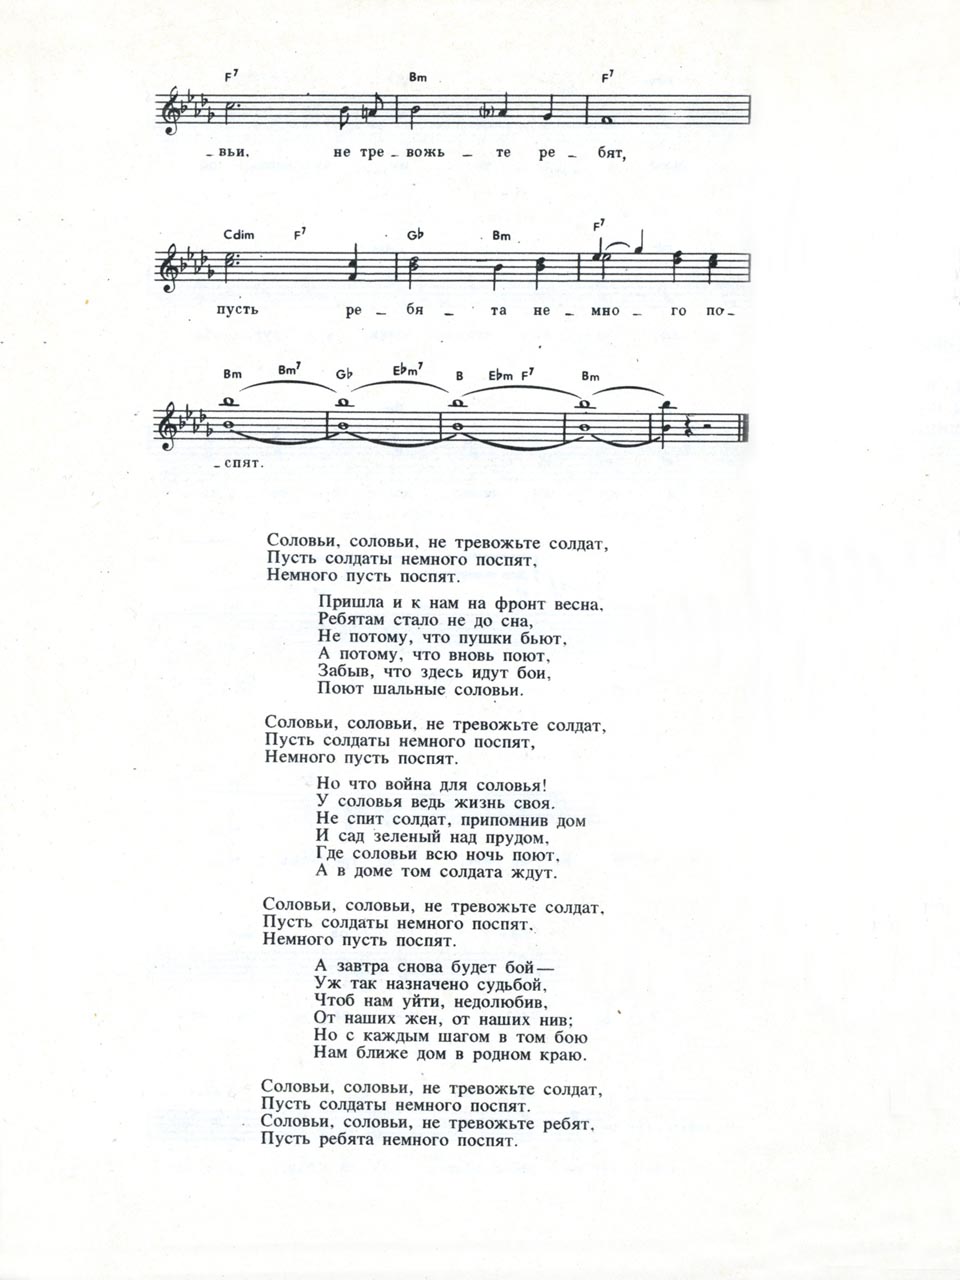 В. Соловьев-Седой, А. Фатьянов. Песня «Соловьи». Ноты для голоса и аккорды